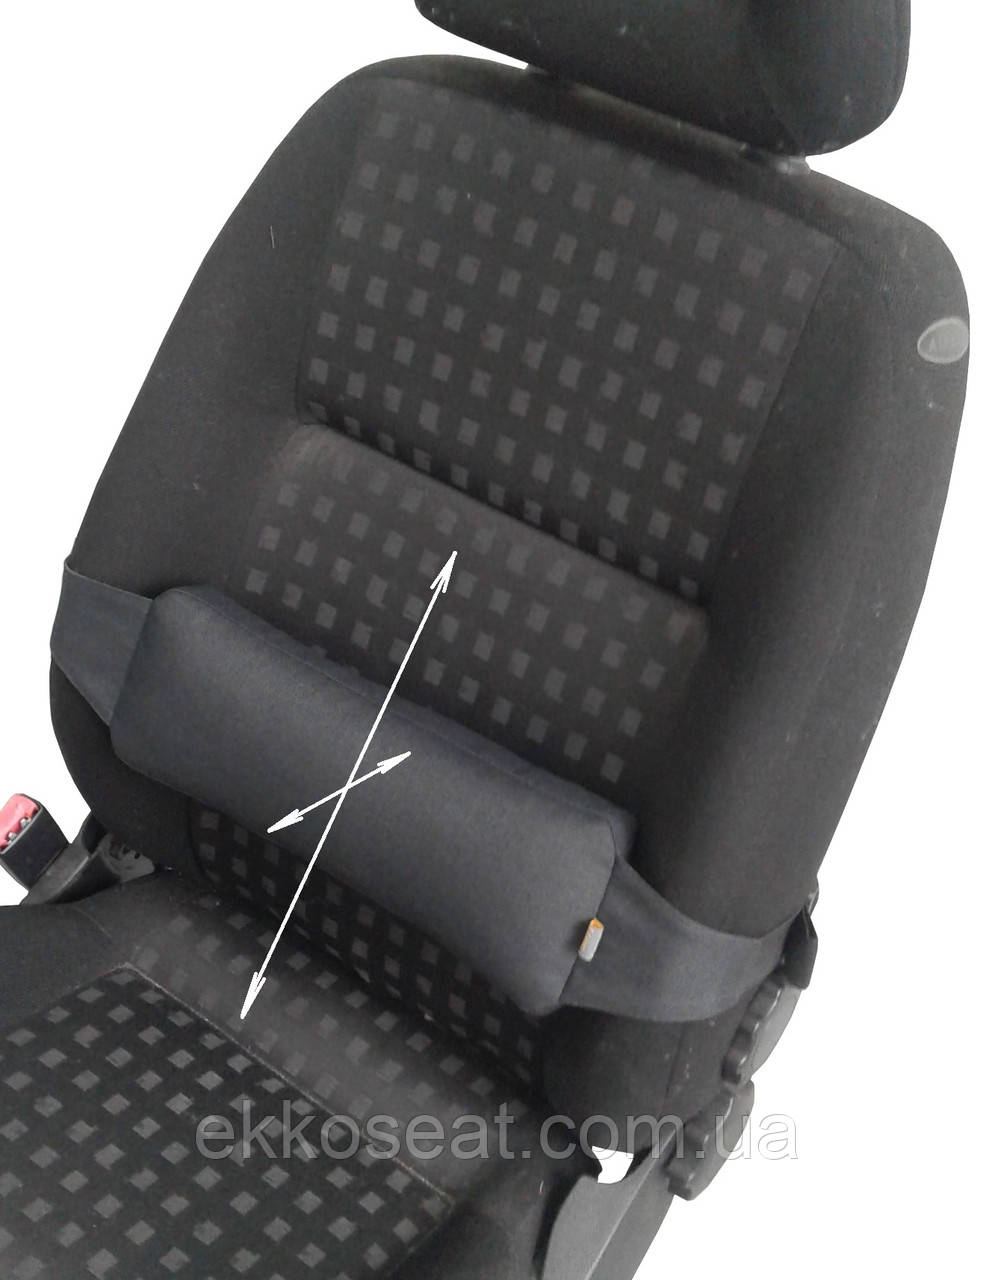 Ортопедична подушка EKKOSEAT під спину на крісло